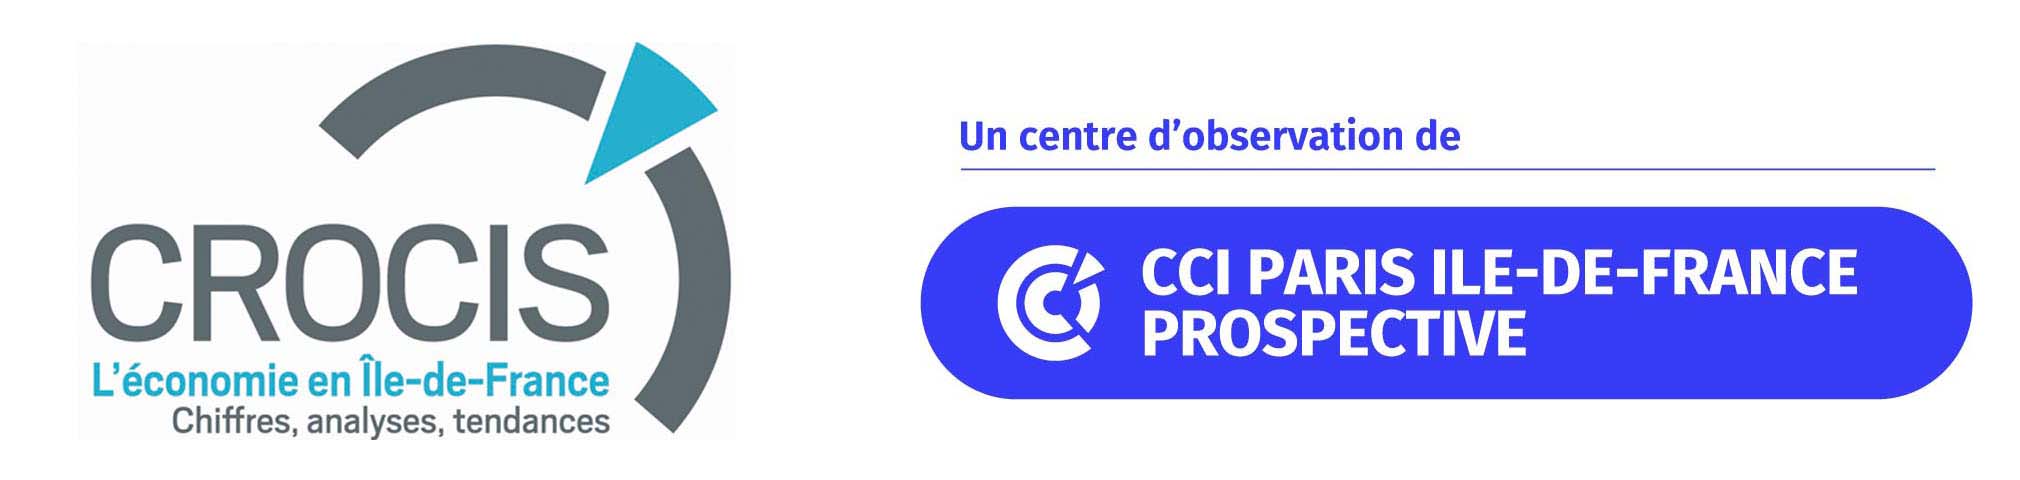 logo crocis et CCI